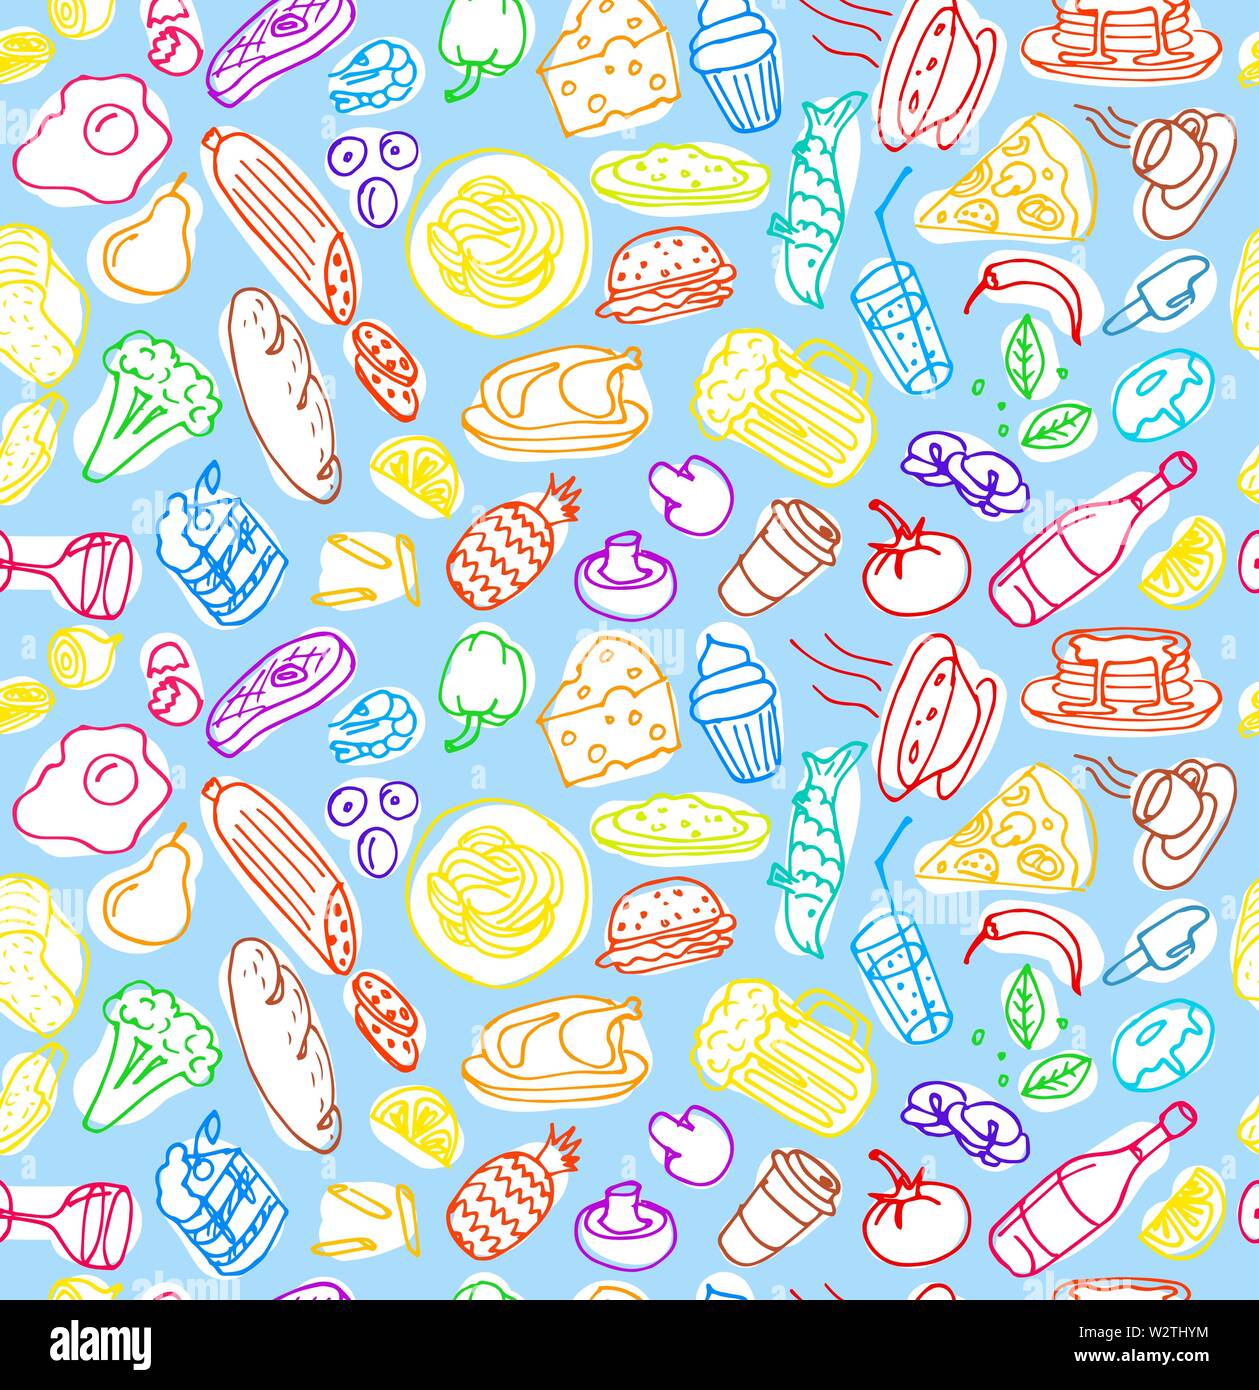 Vari disegnati a mano cucina alimentare doodle contorno disegno colorato seamless pattern su fondo azzurro. Per il disegno vettoriale tecnica di cottura illustrazione Illustrazione Vettoriale